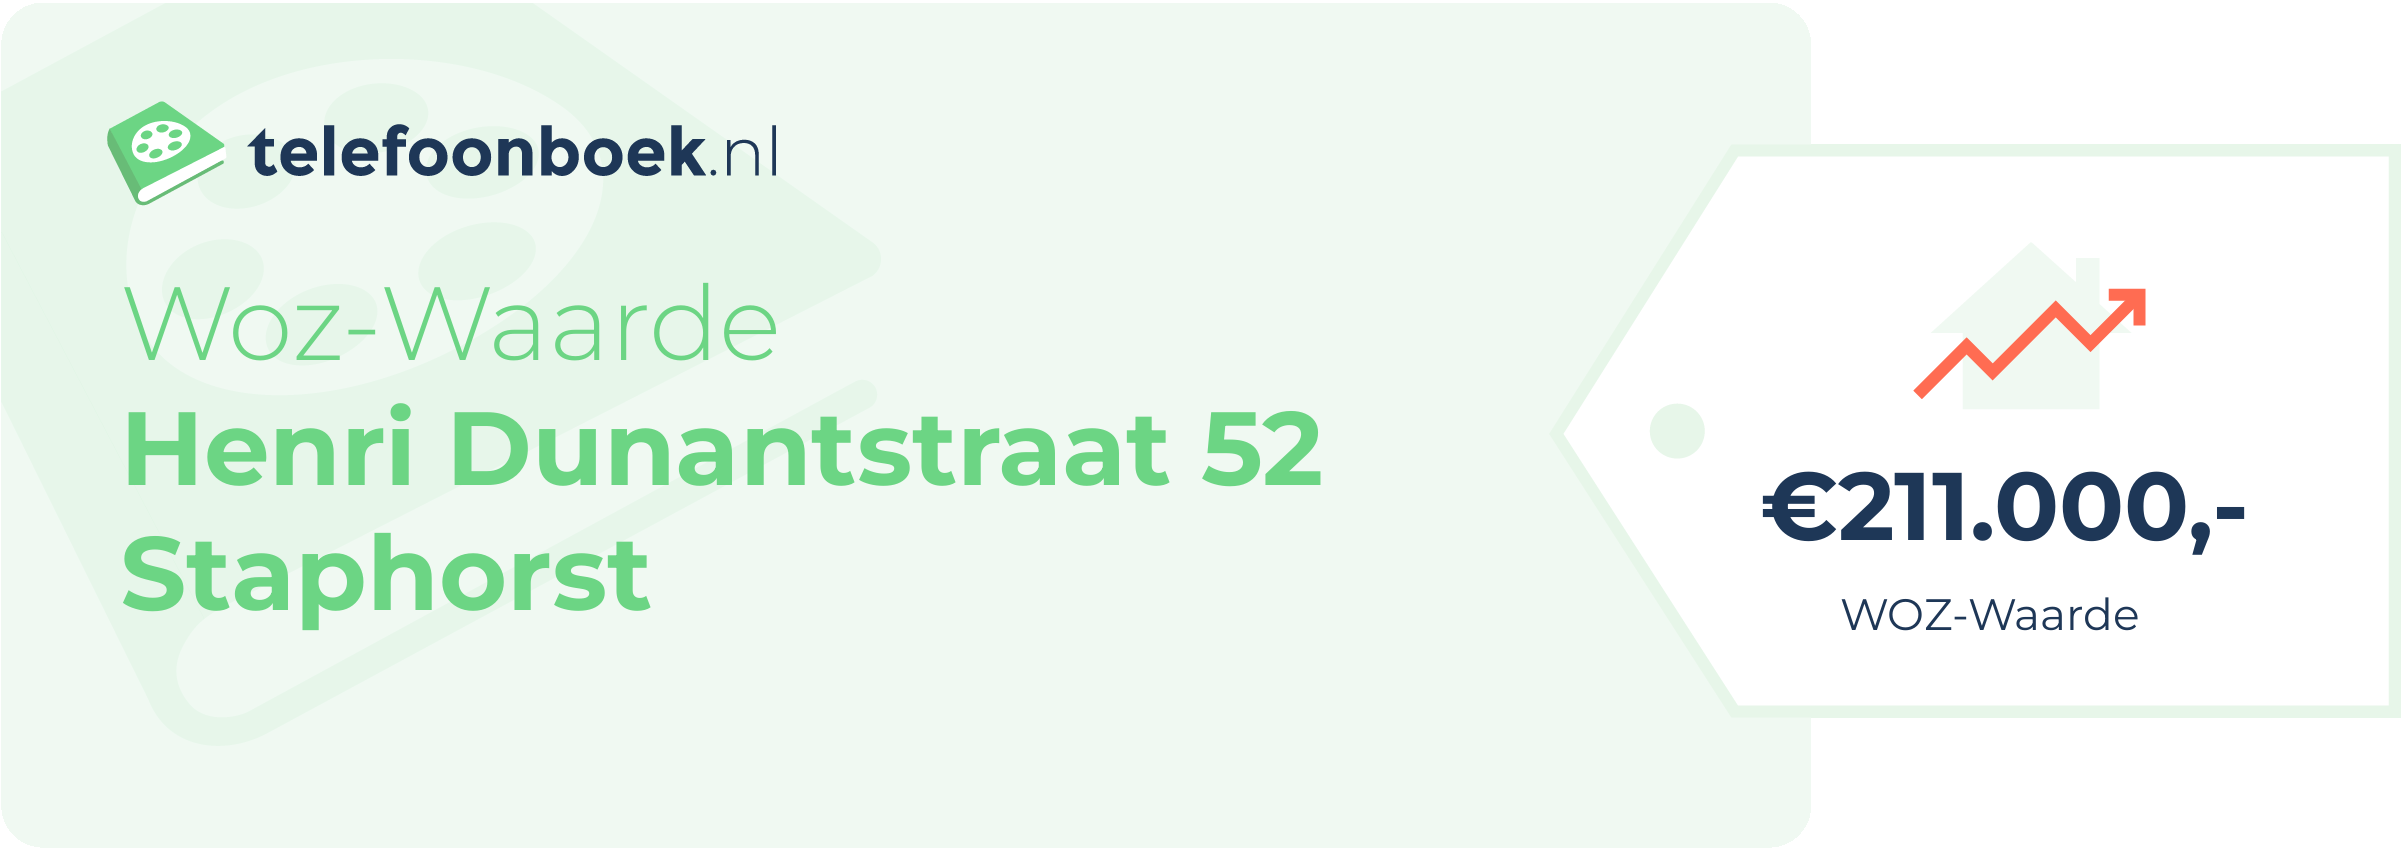 WOZ-waarde Henri Dunantstraat 52 Staphorst